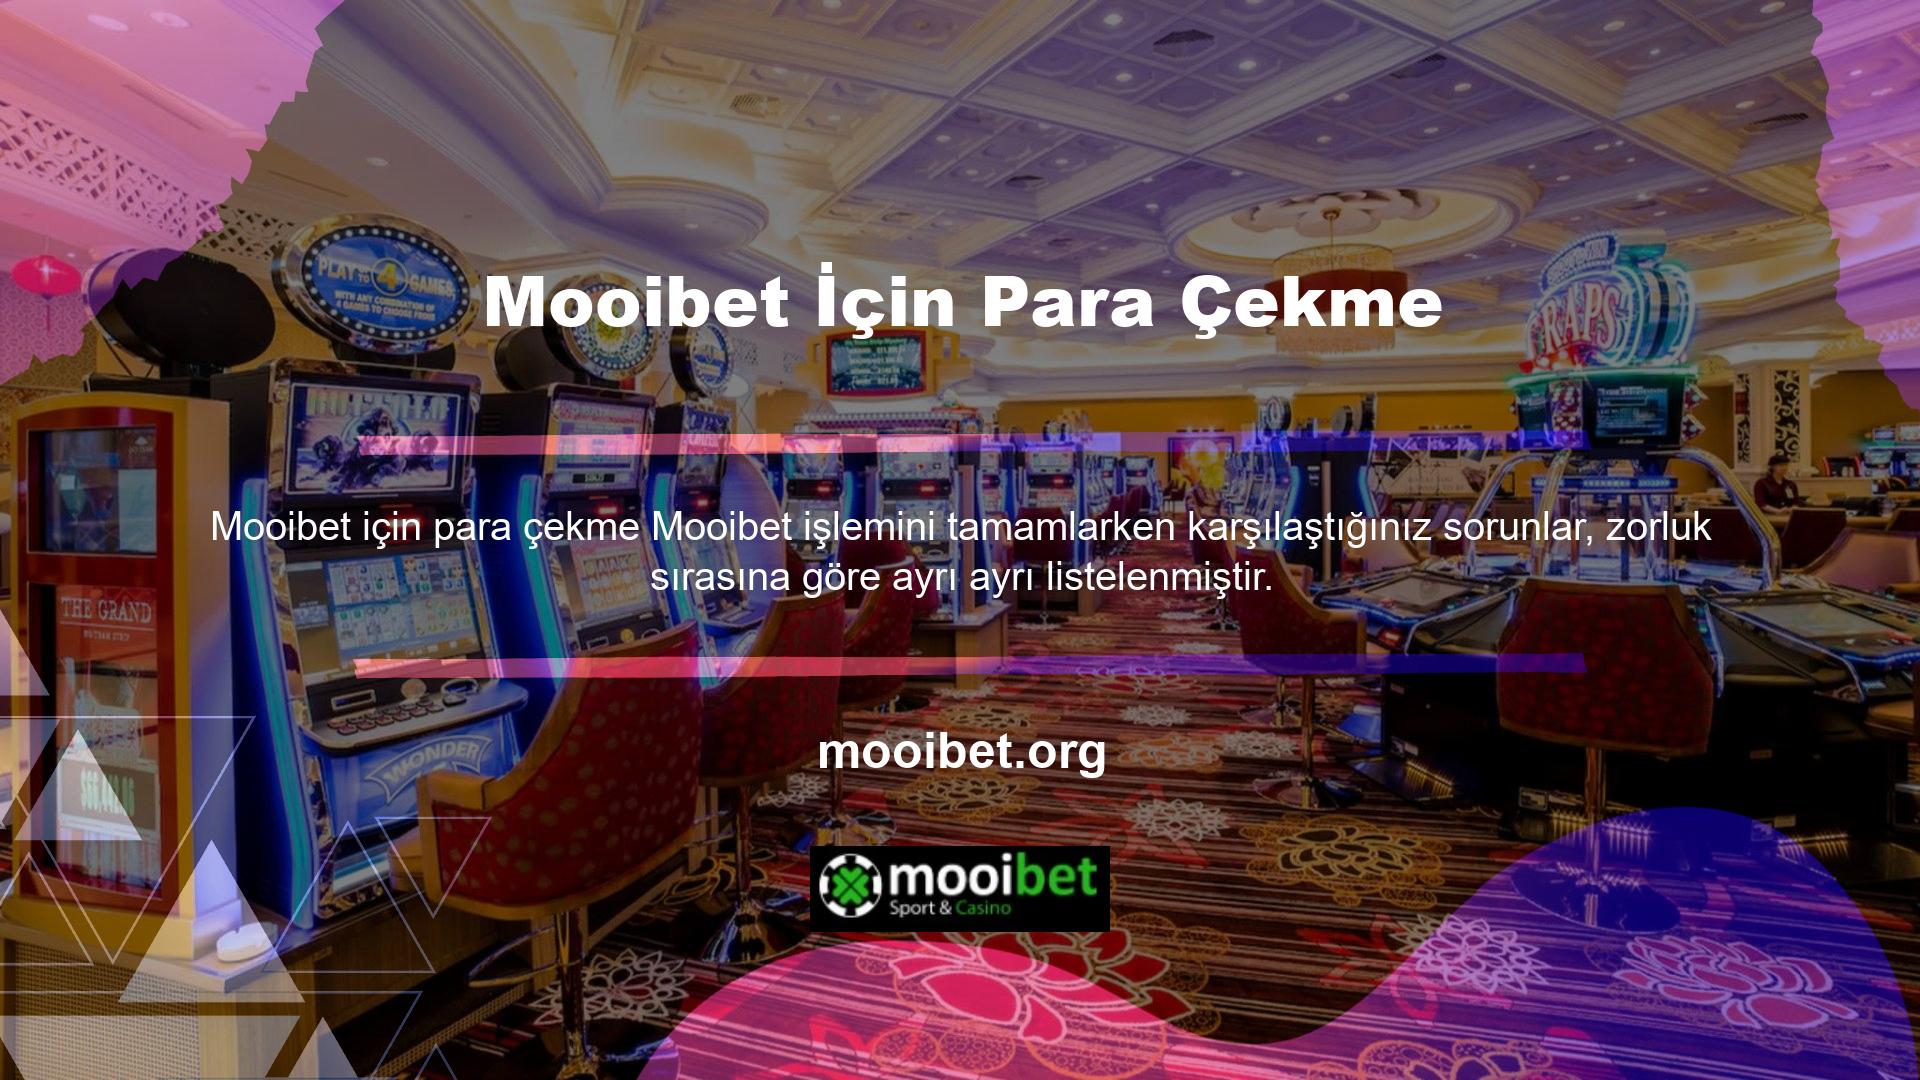 Mooibet ortak uygulamasının kullanımı, canlı bahis mağazalarının yeni müşteriler çekmesinin basit bir yoludur